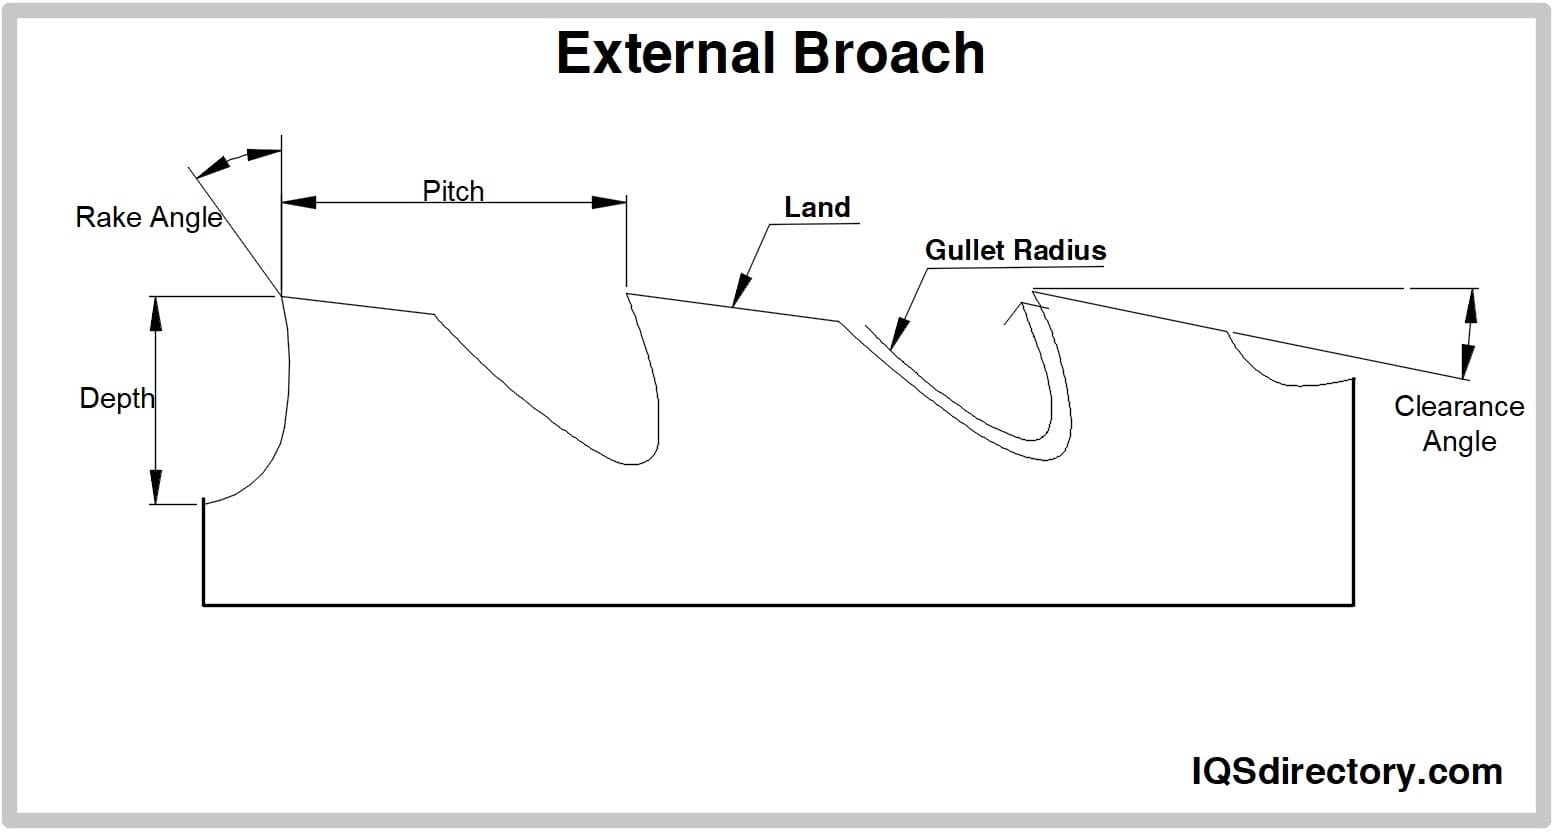 External Broach